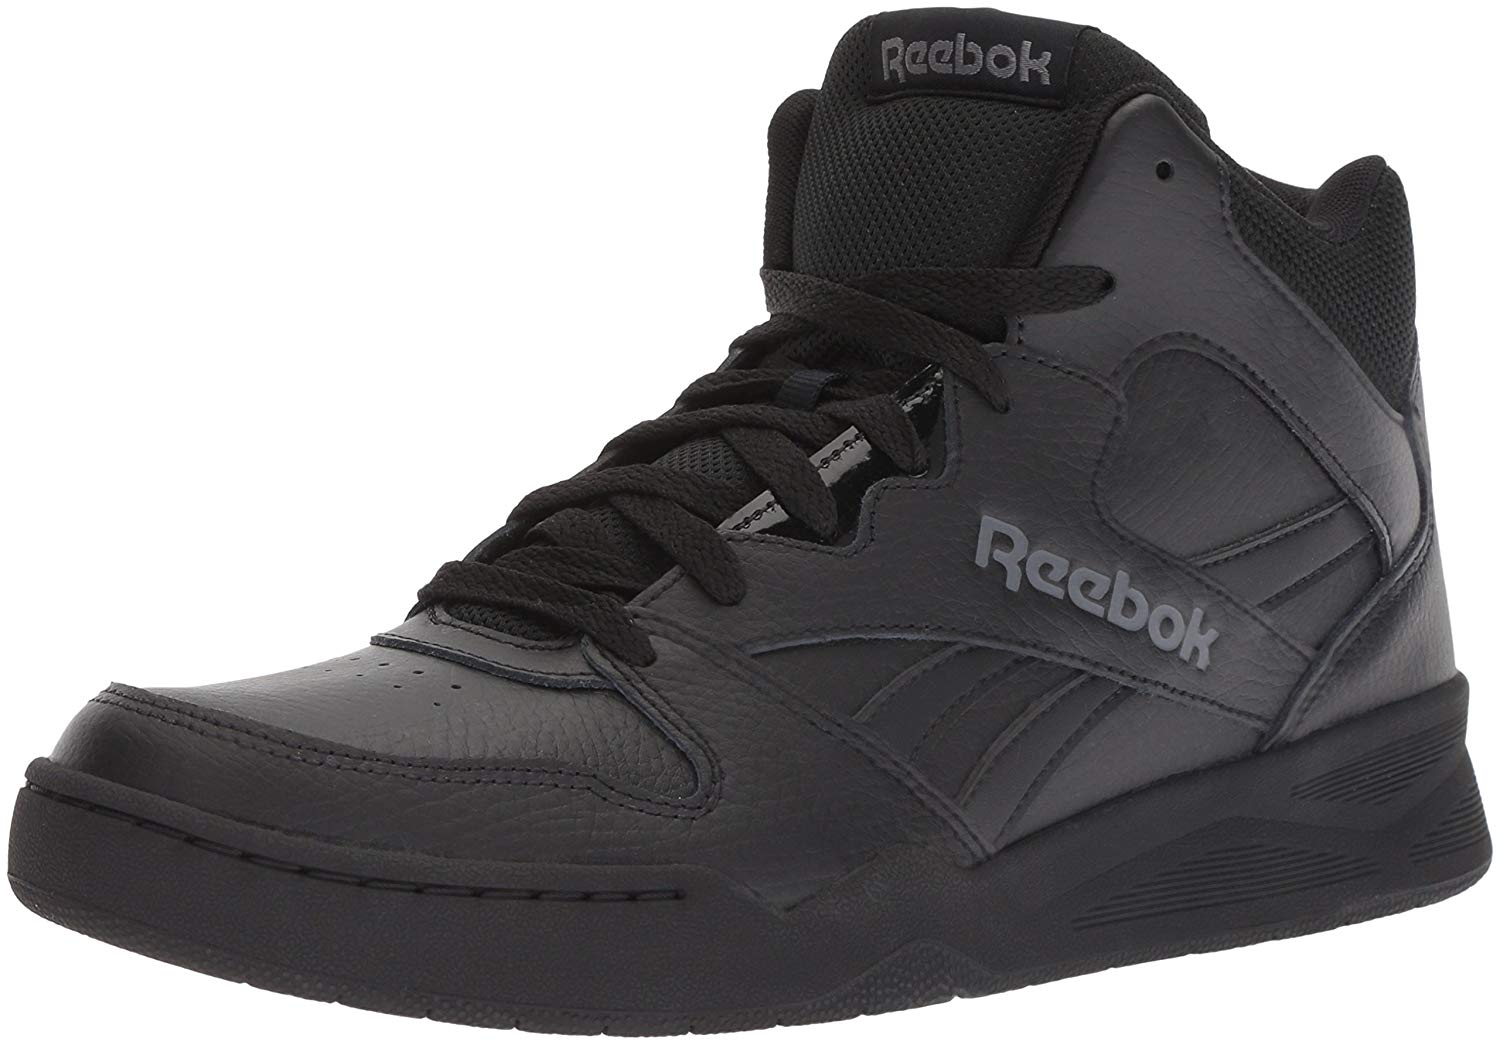 Reebok Men's Royal Bb4500 Hi2, Black/Alloy, Size 10.5 BV8W | eBay